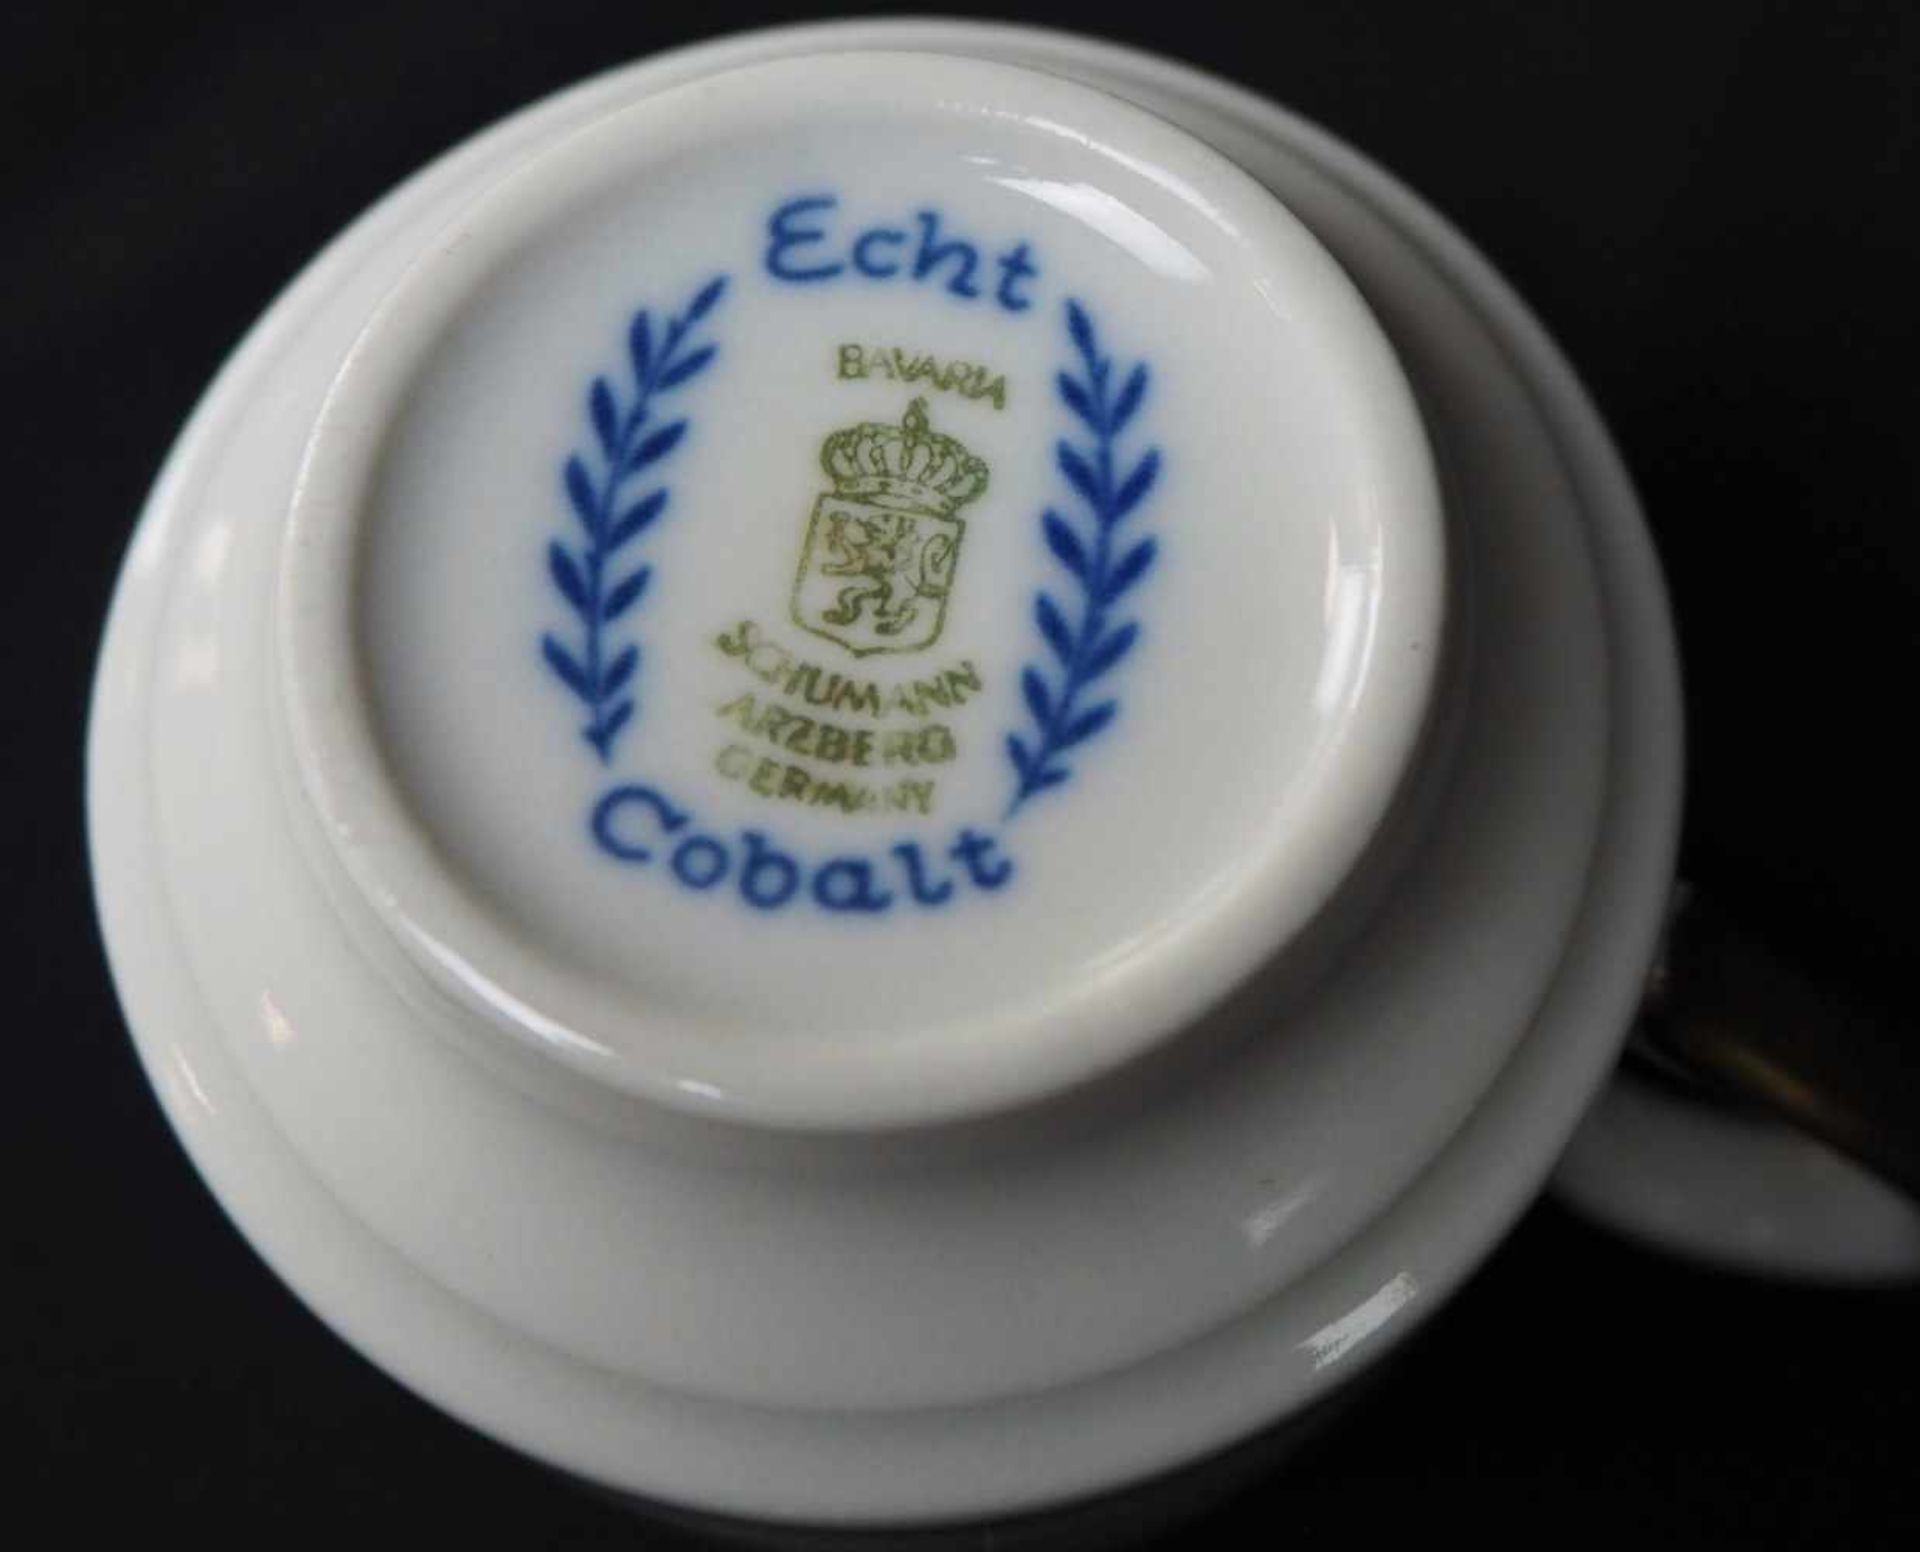 Kaffeeservice -Schumann Arzberg Bavaria- "Echt Cobalt" für 6 Personen.Cobalt blau mit Goldrand, 21 - Bild 2 aus 2